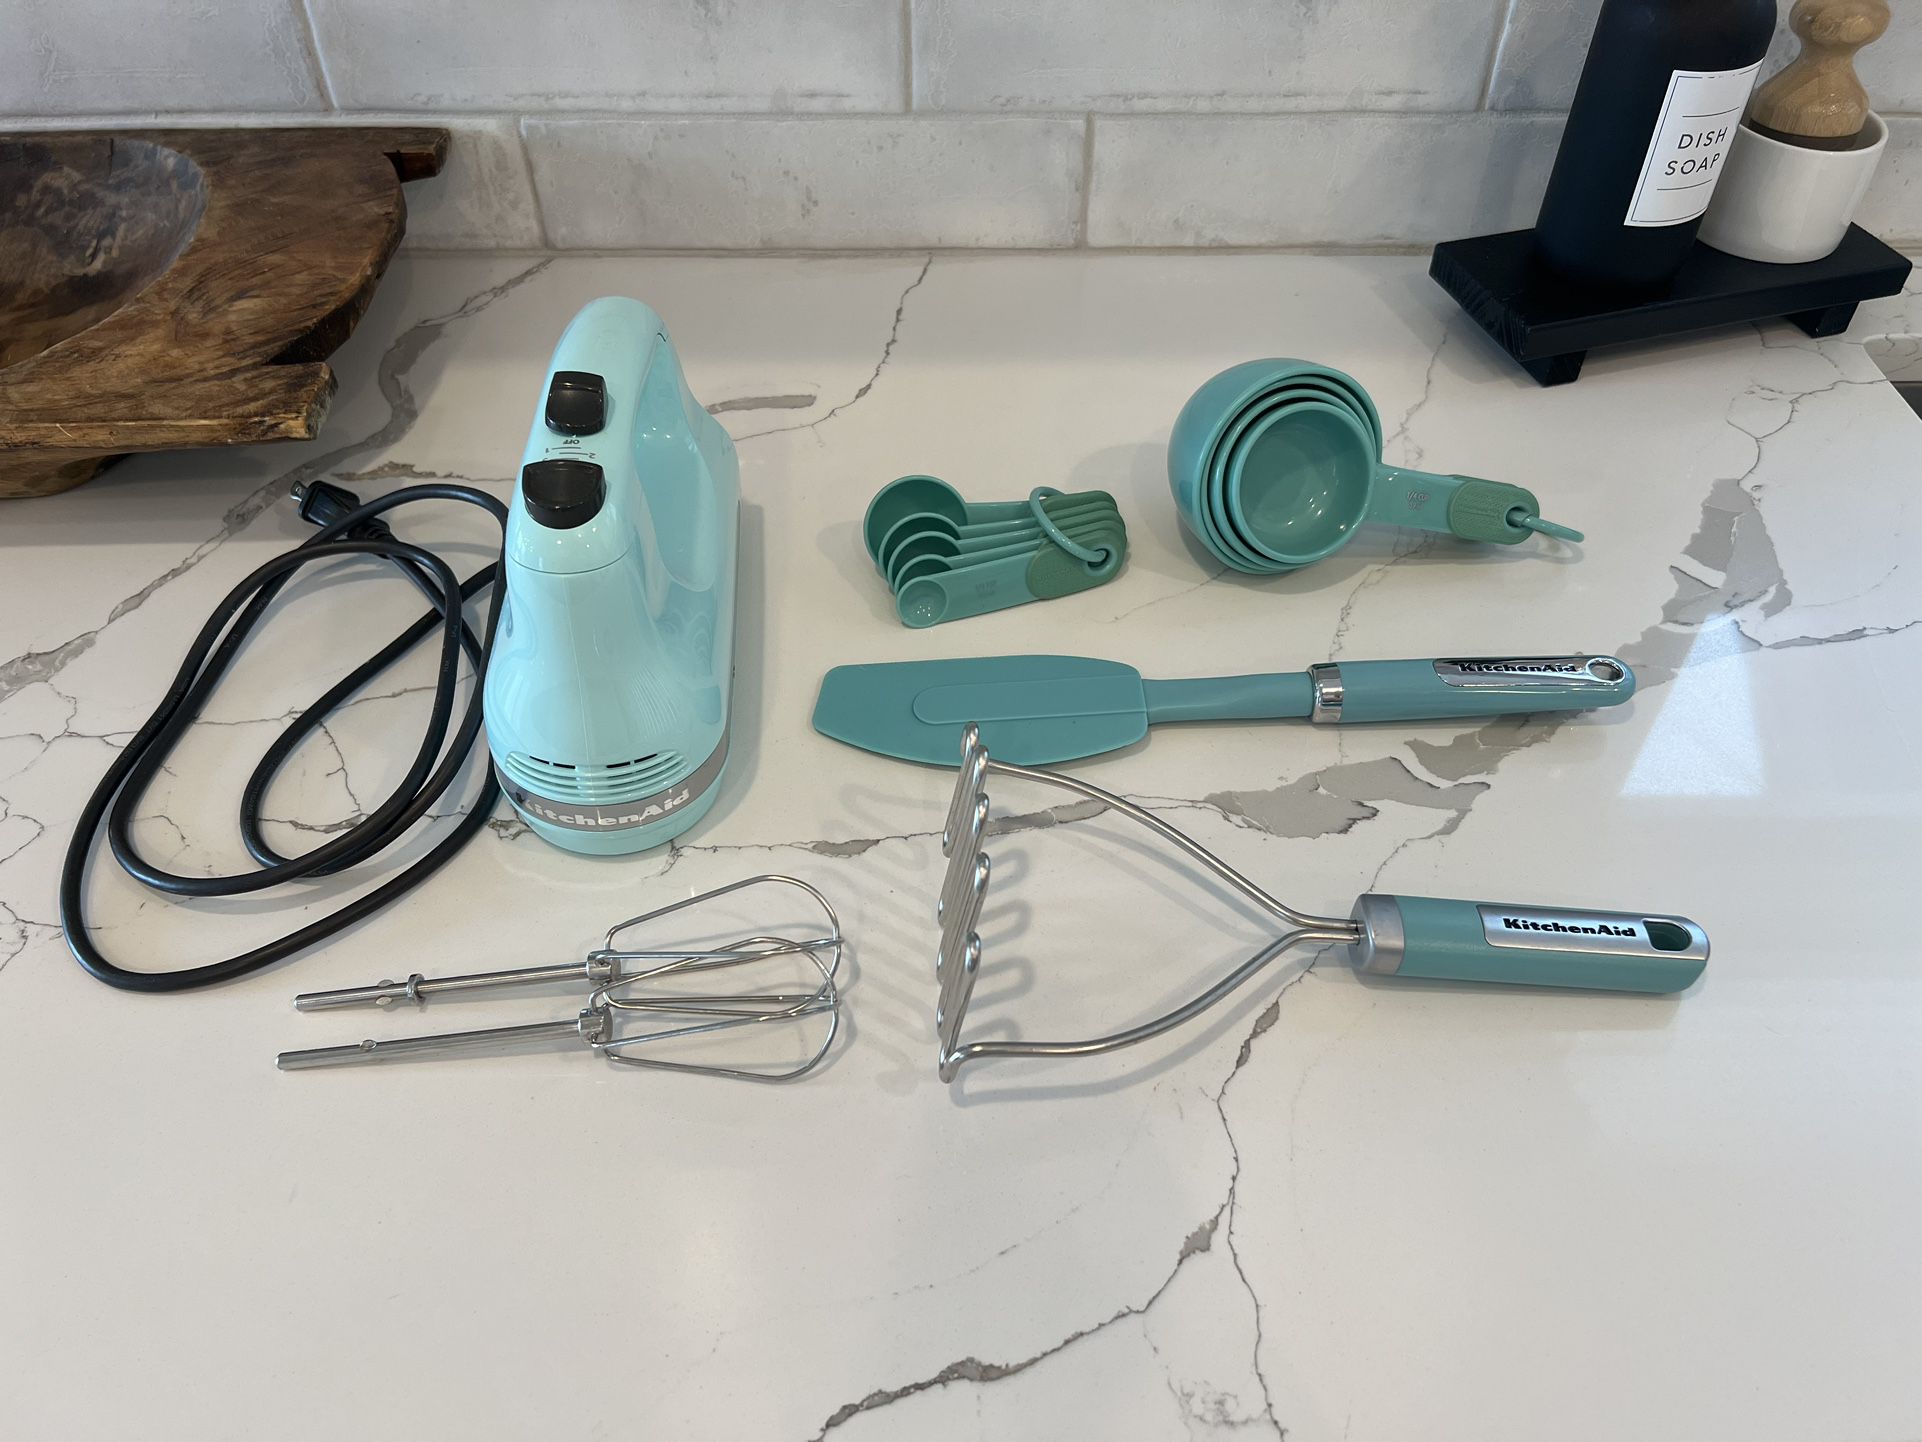 Kitchen Aid Hand Mixer and Kitchen Utensils